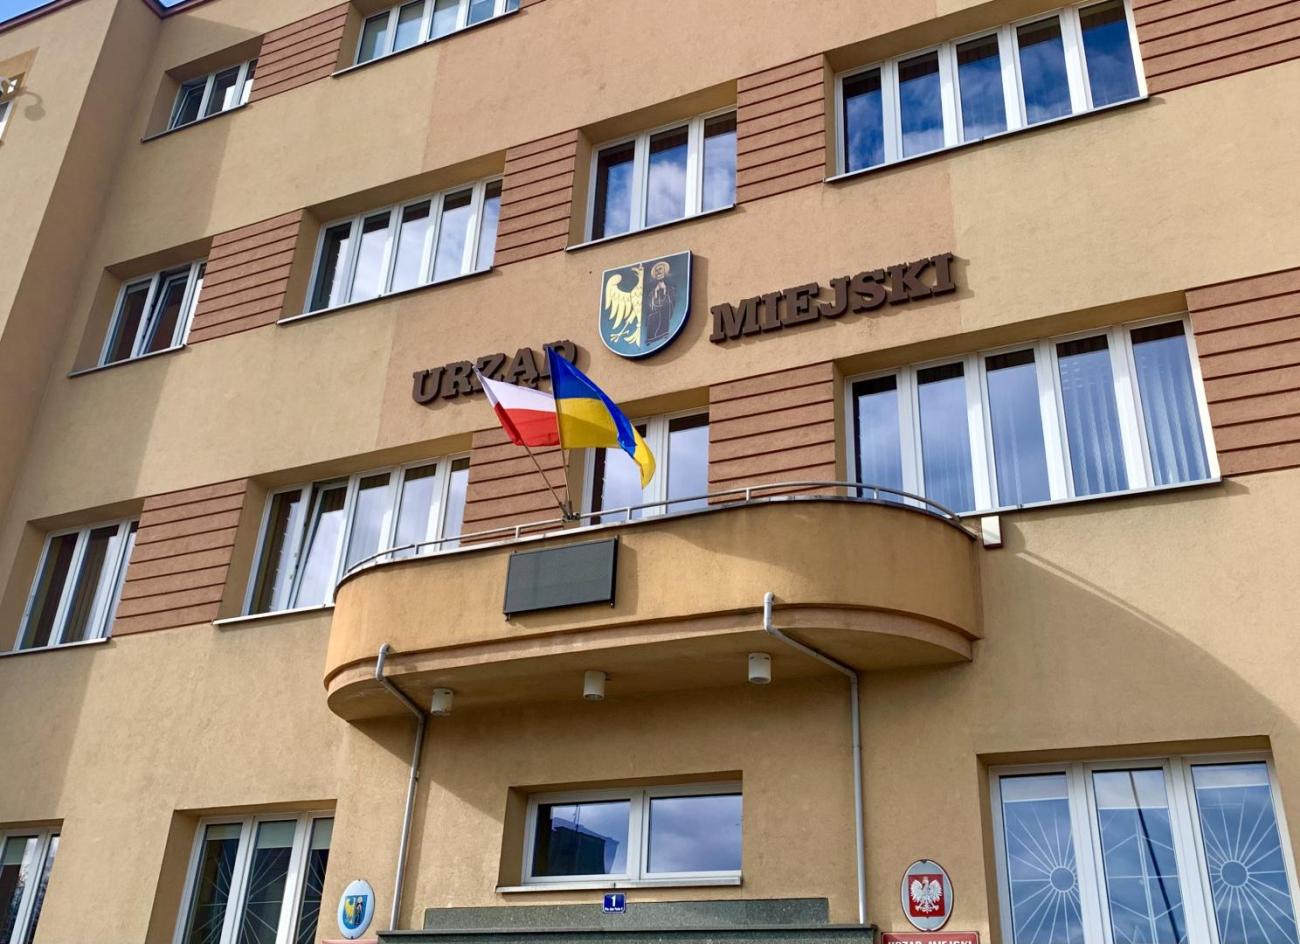 Budynek Urzędu Miejskiego z flagmi Polski i Ukrainy